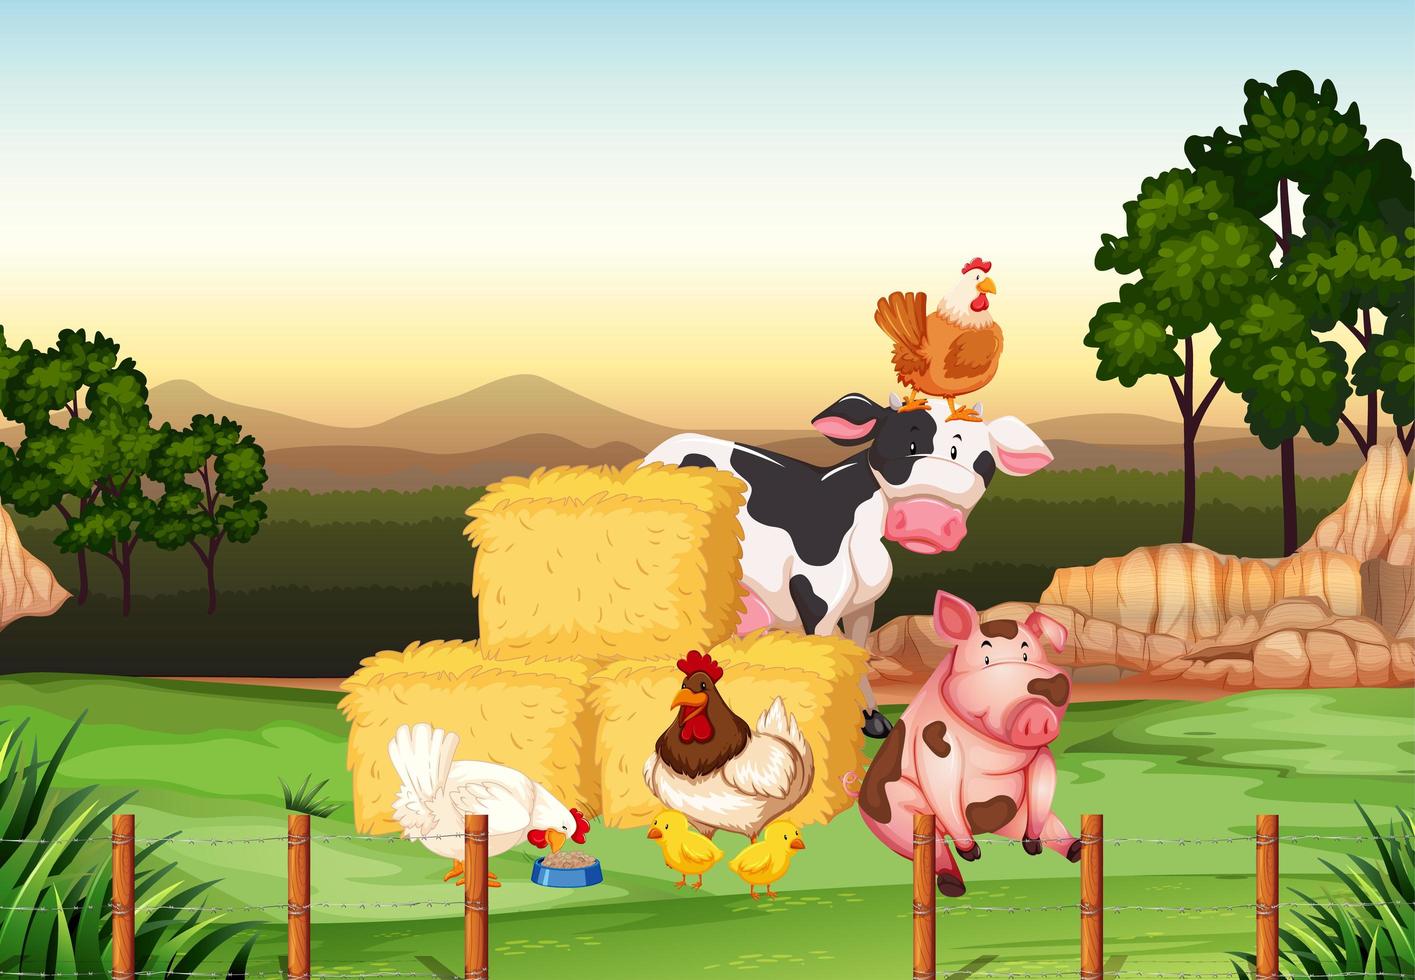 Farm scene with animals on the farm vector